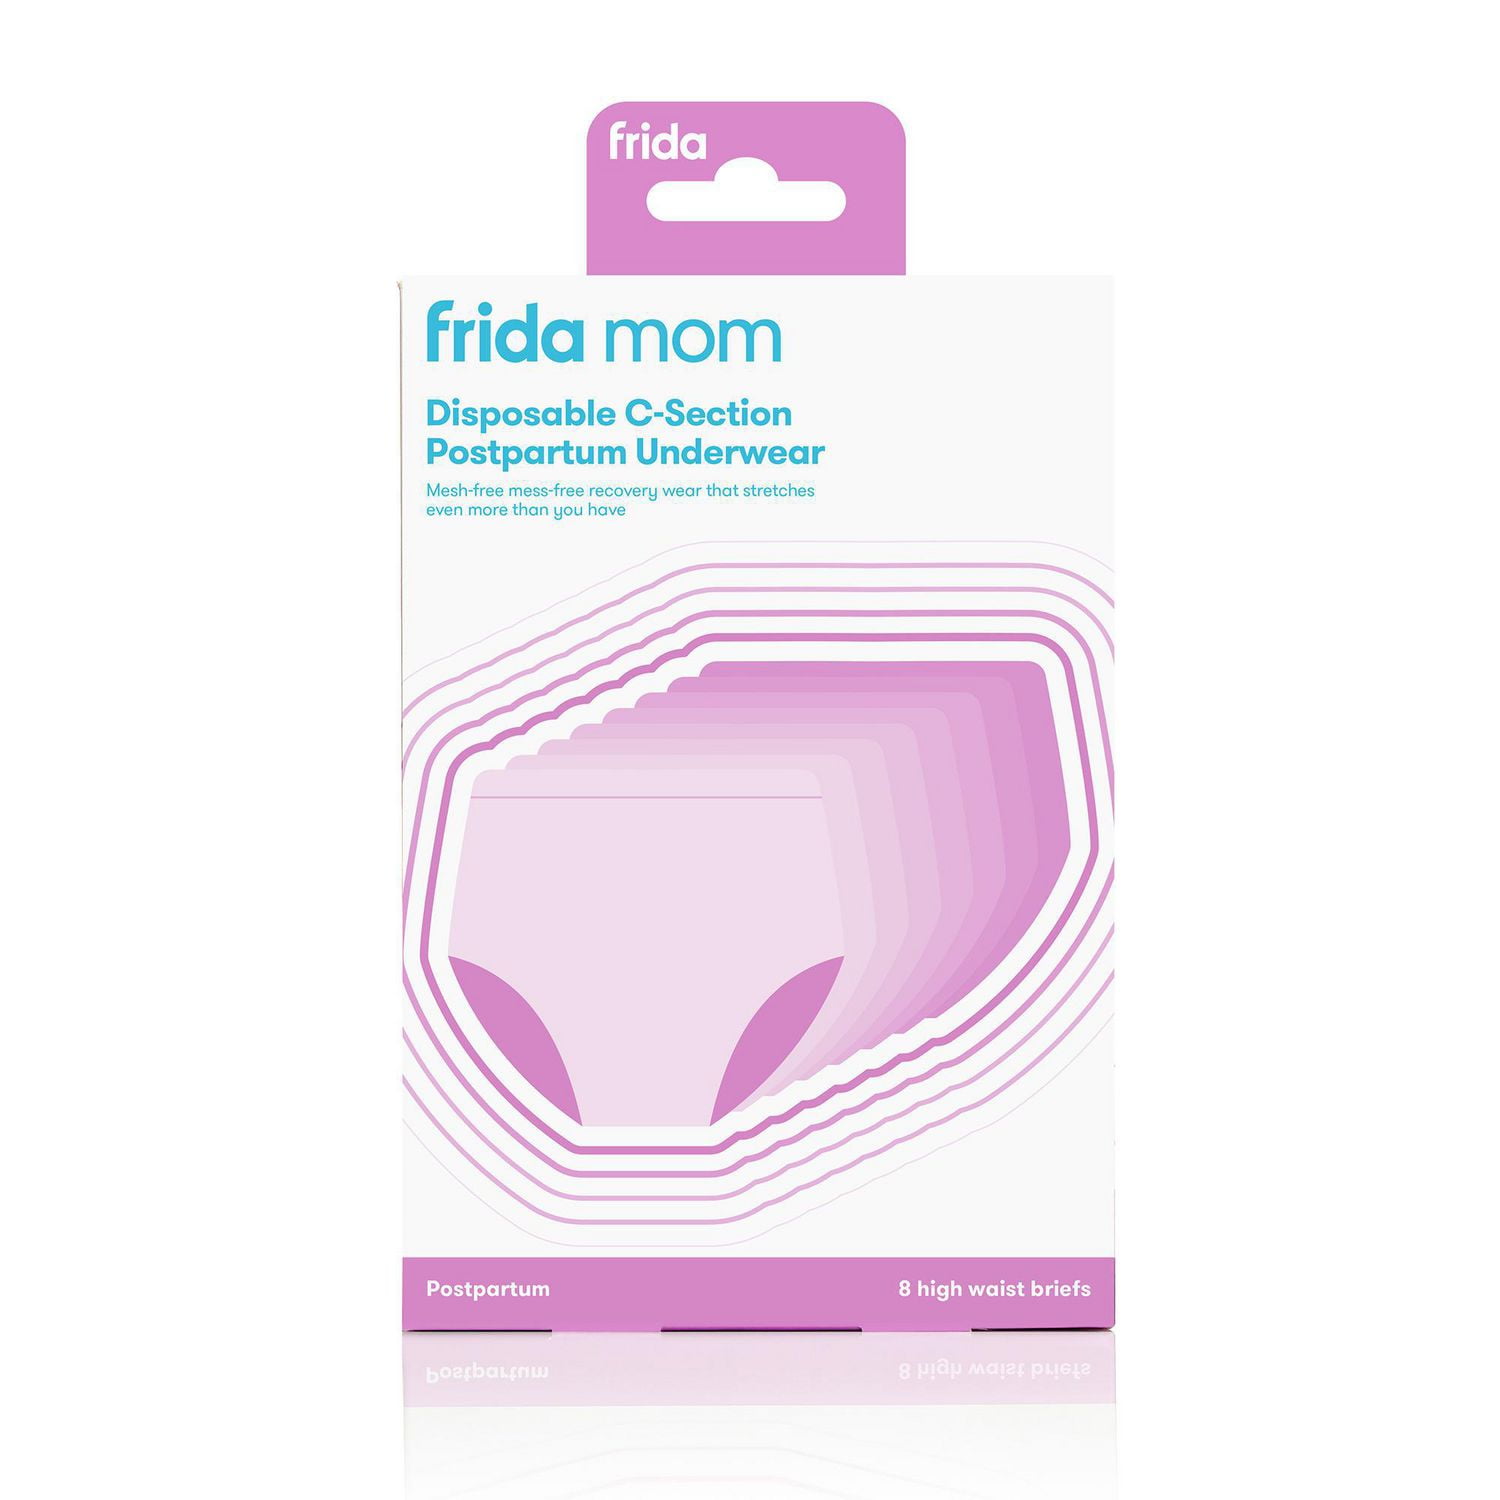 Frida Mom Disposable Postpartum Underwear Step 2 Super Soft